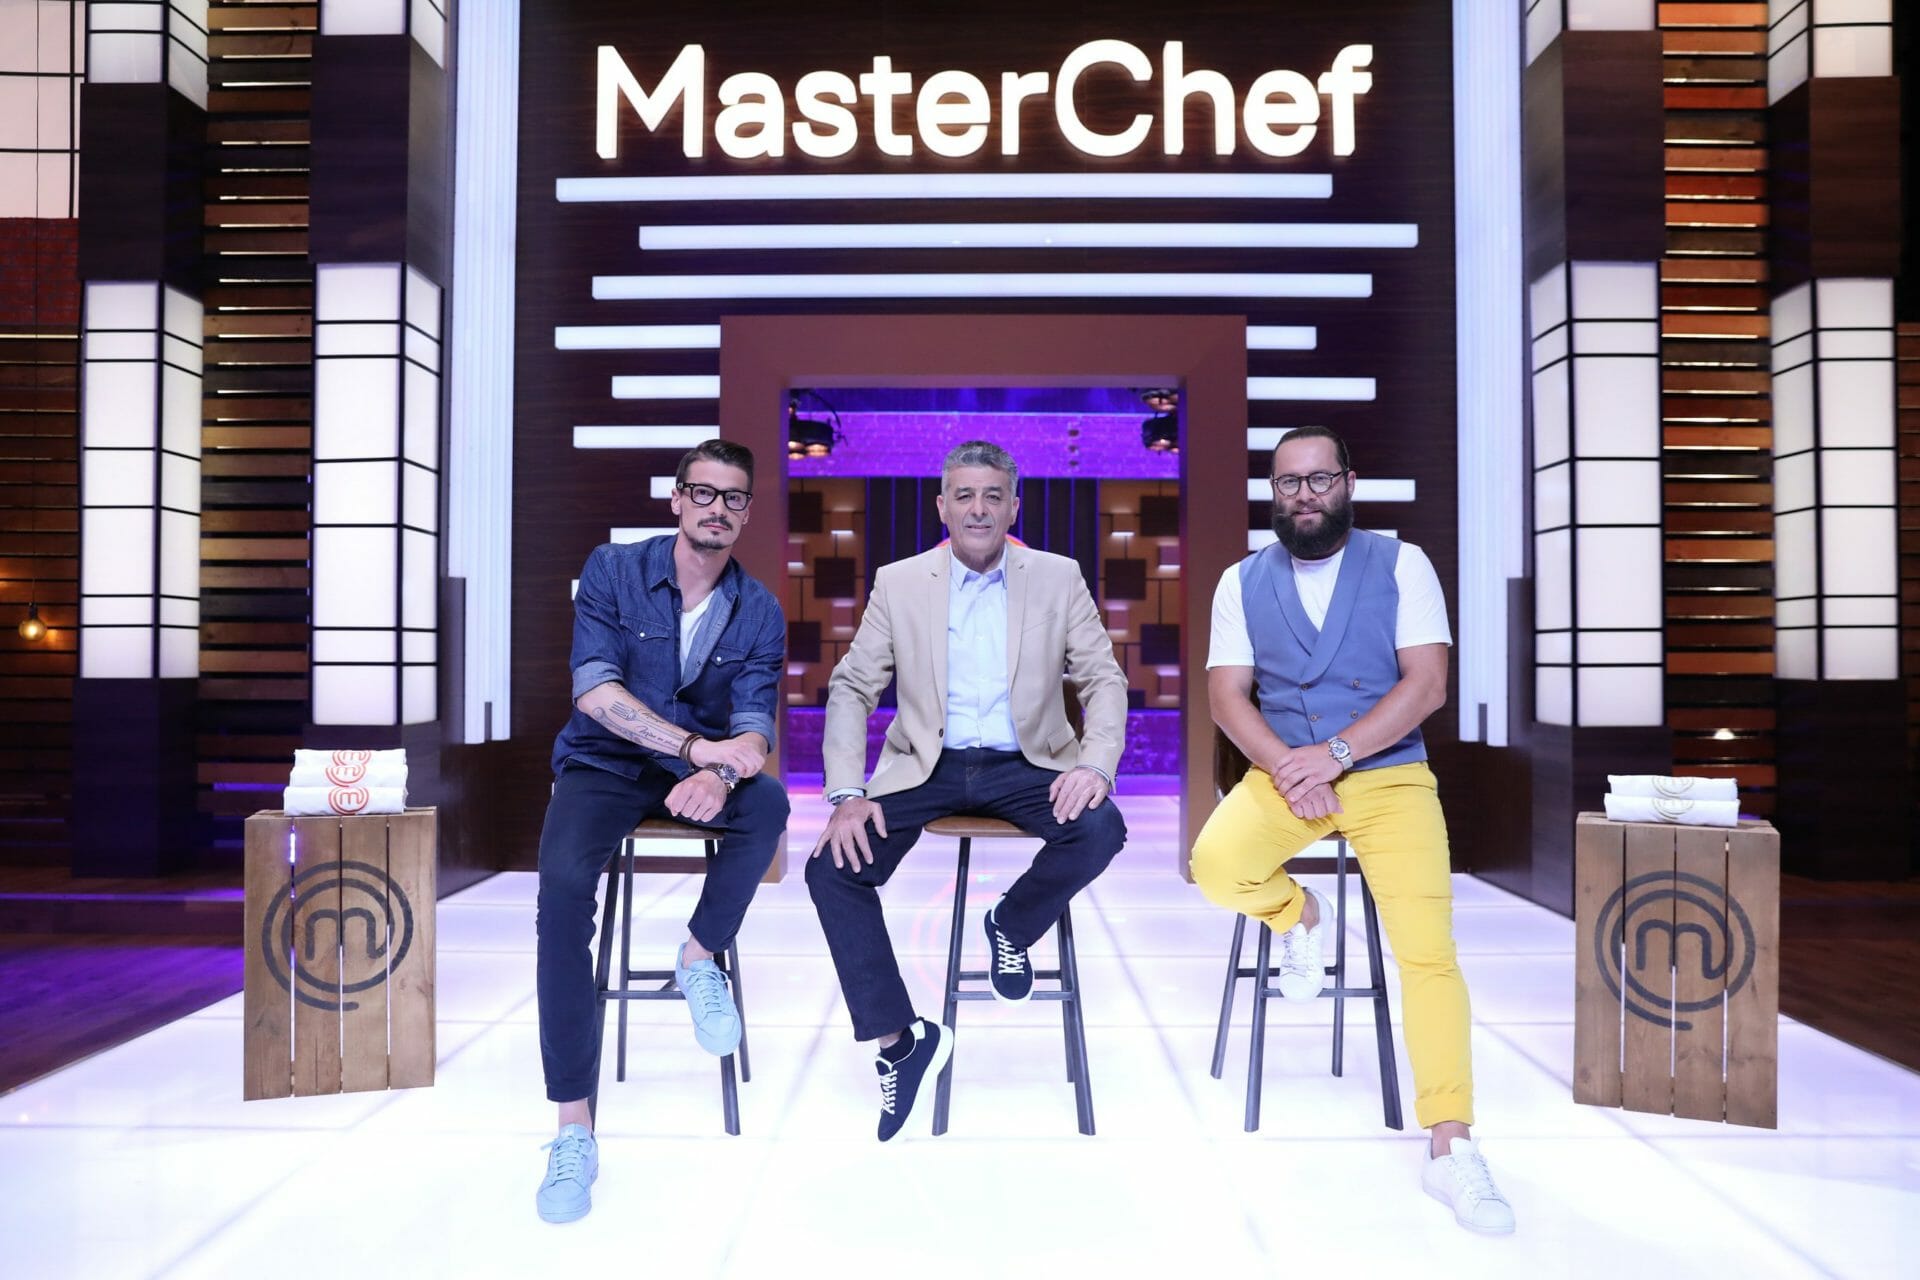 MasterChef revine la Pro TV, după doi ani de pauză. A fost cel mai urmărit cooking show culinar